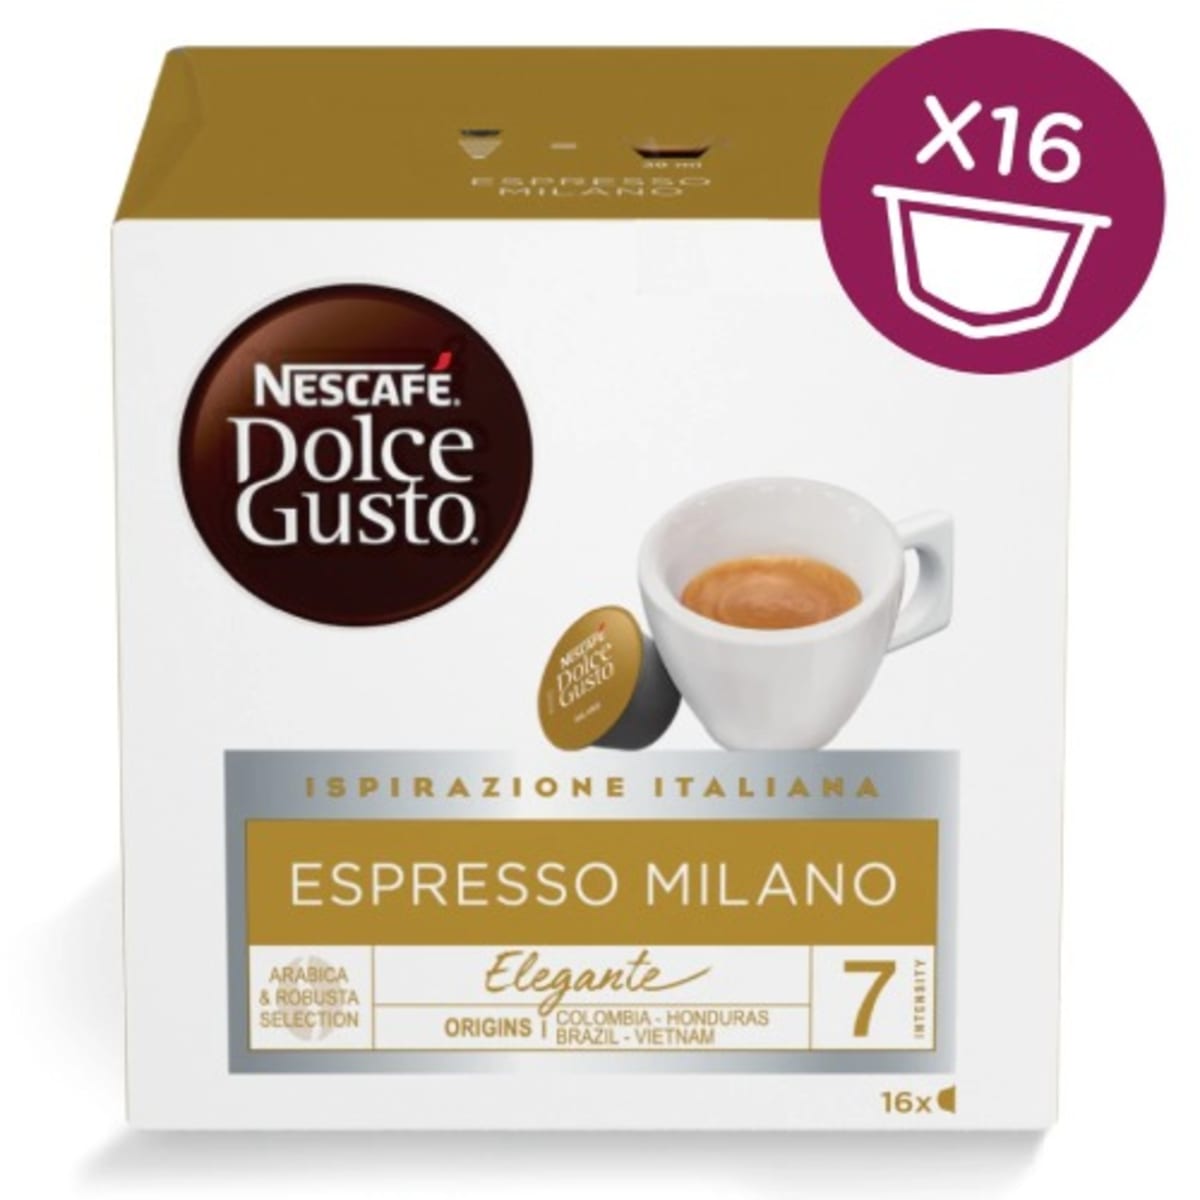 Nescafe Dolce Gusto Espresso Milano Coffe - 3 X 16 Capsules